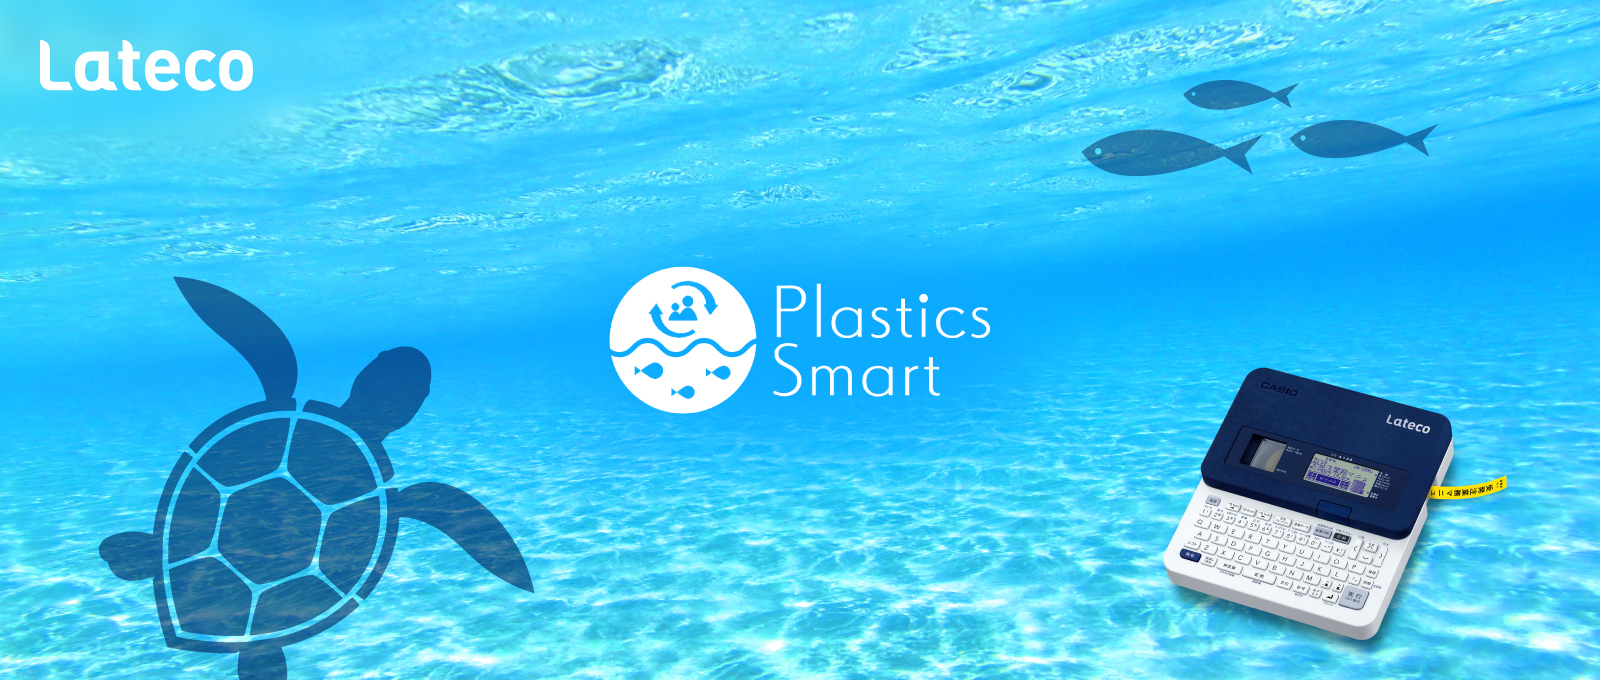 Plastics Smart